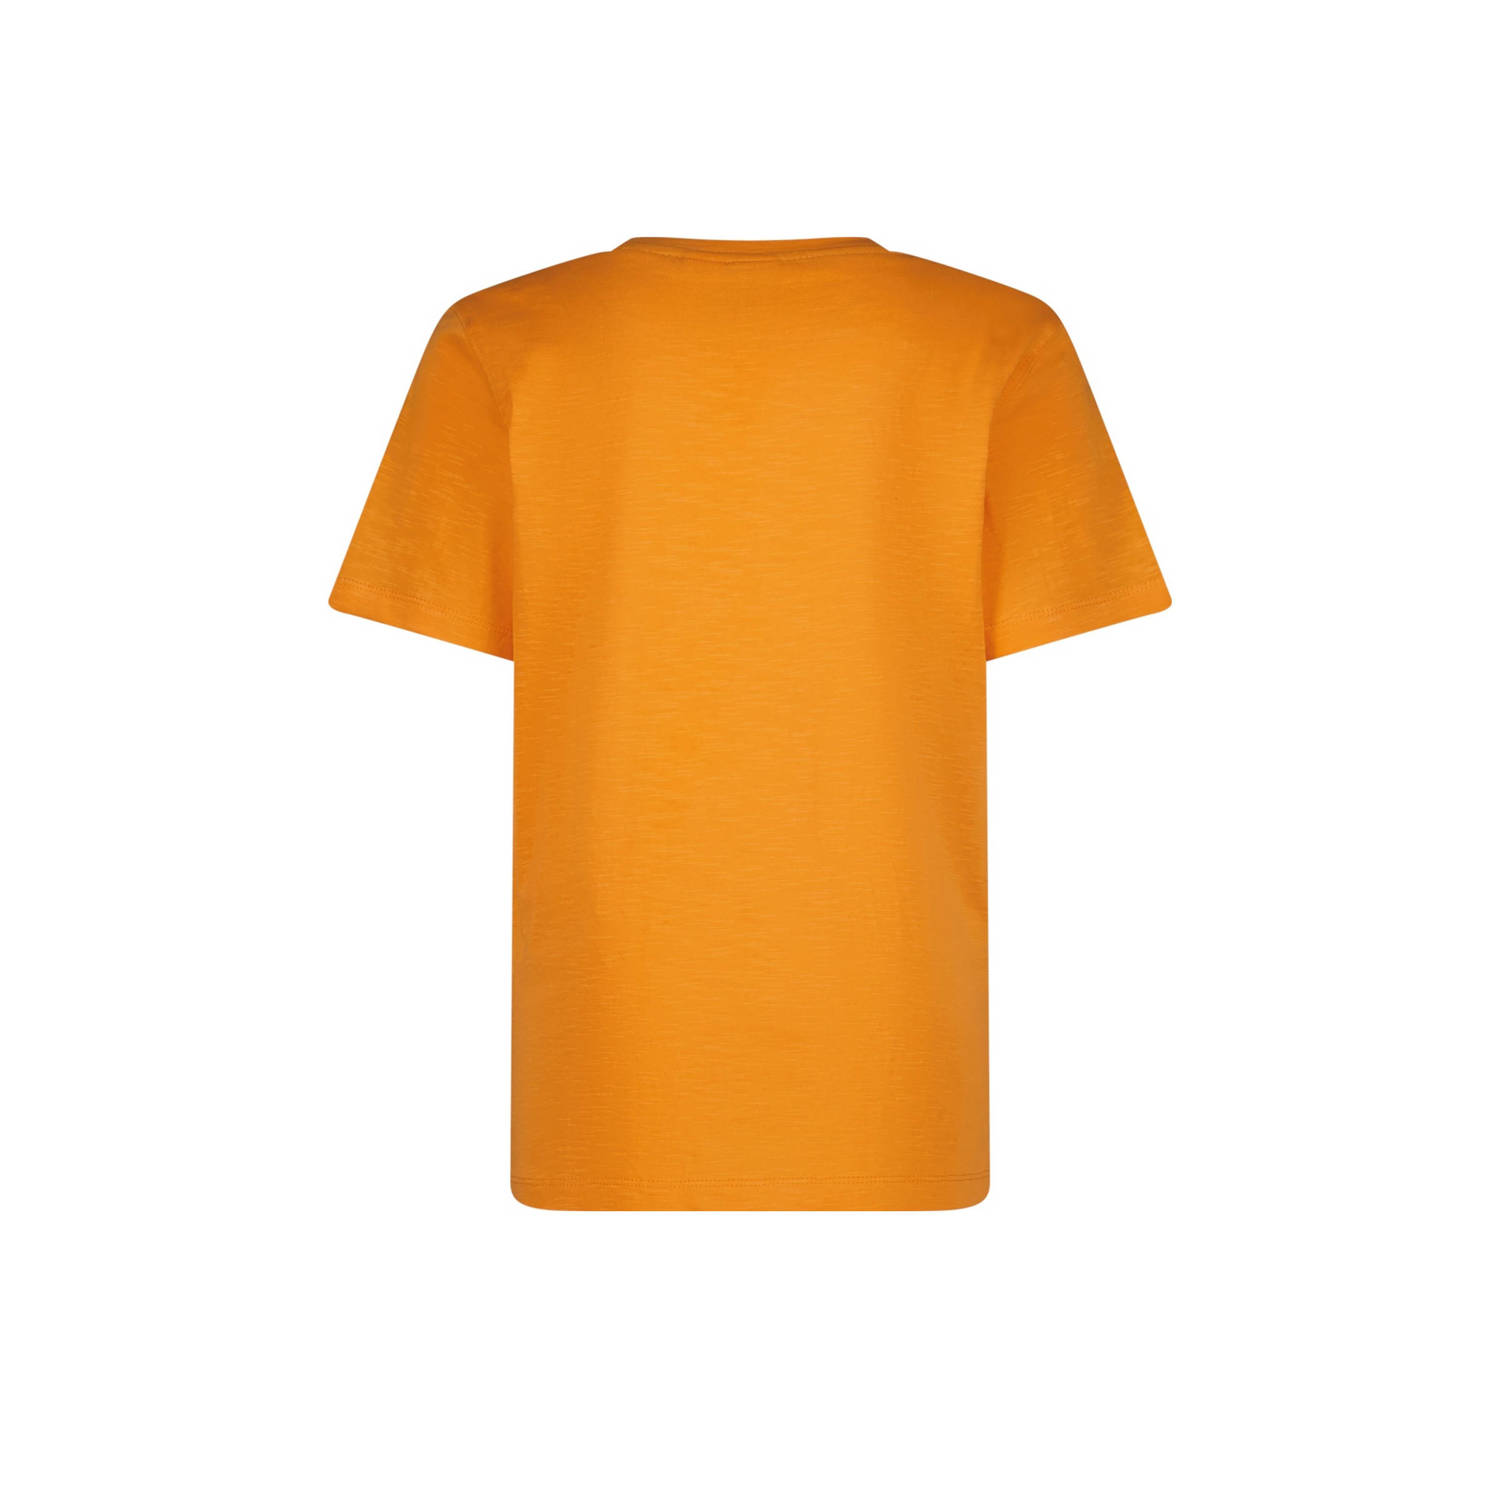 Vingino T-shirt met logo oranje